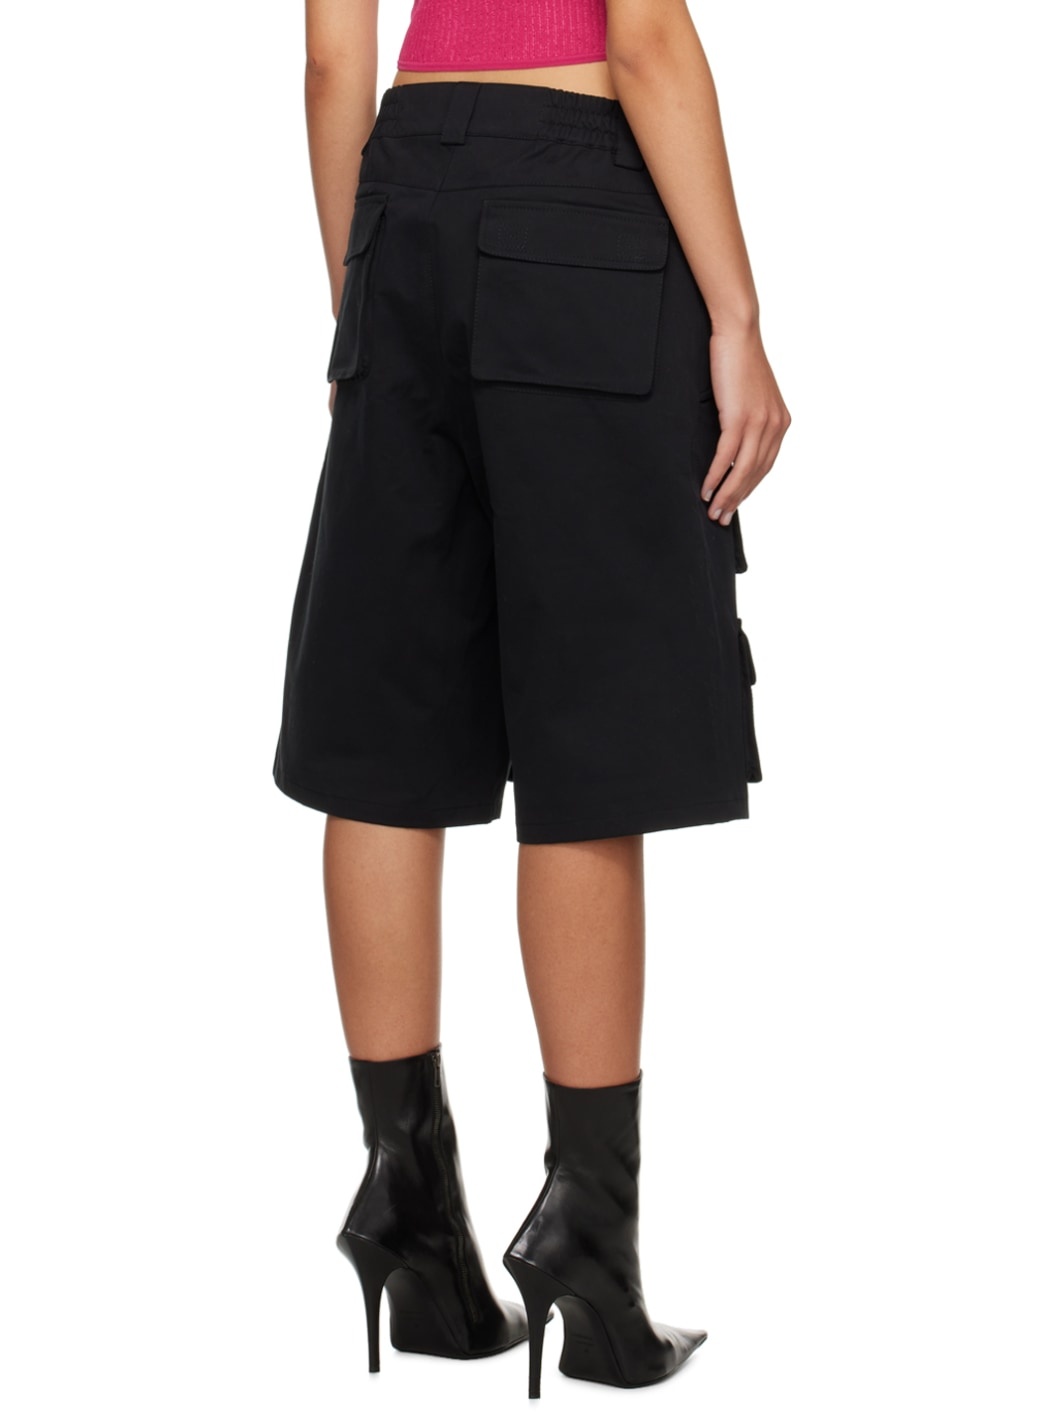 Black Four-Pocket Cargo Shorts - 3